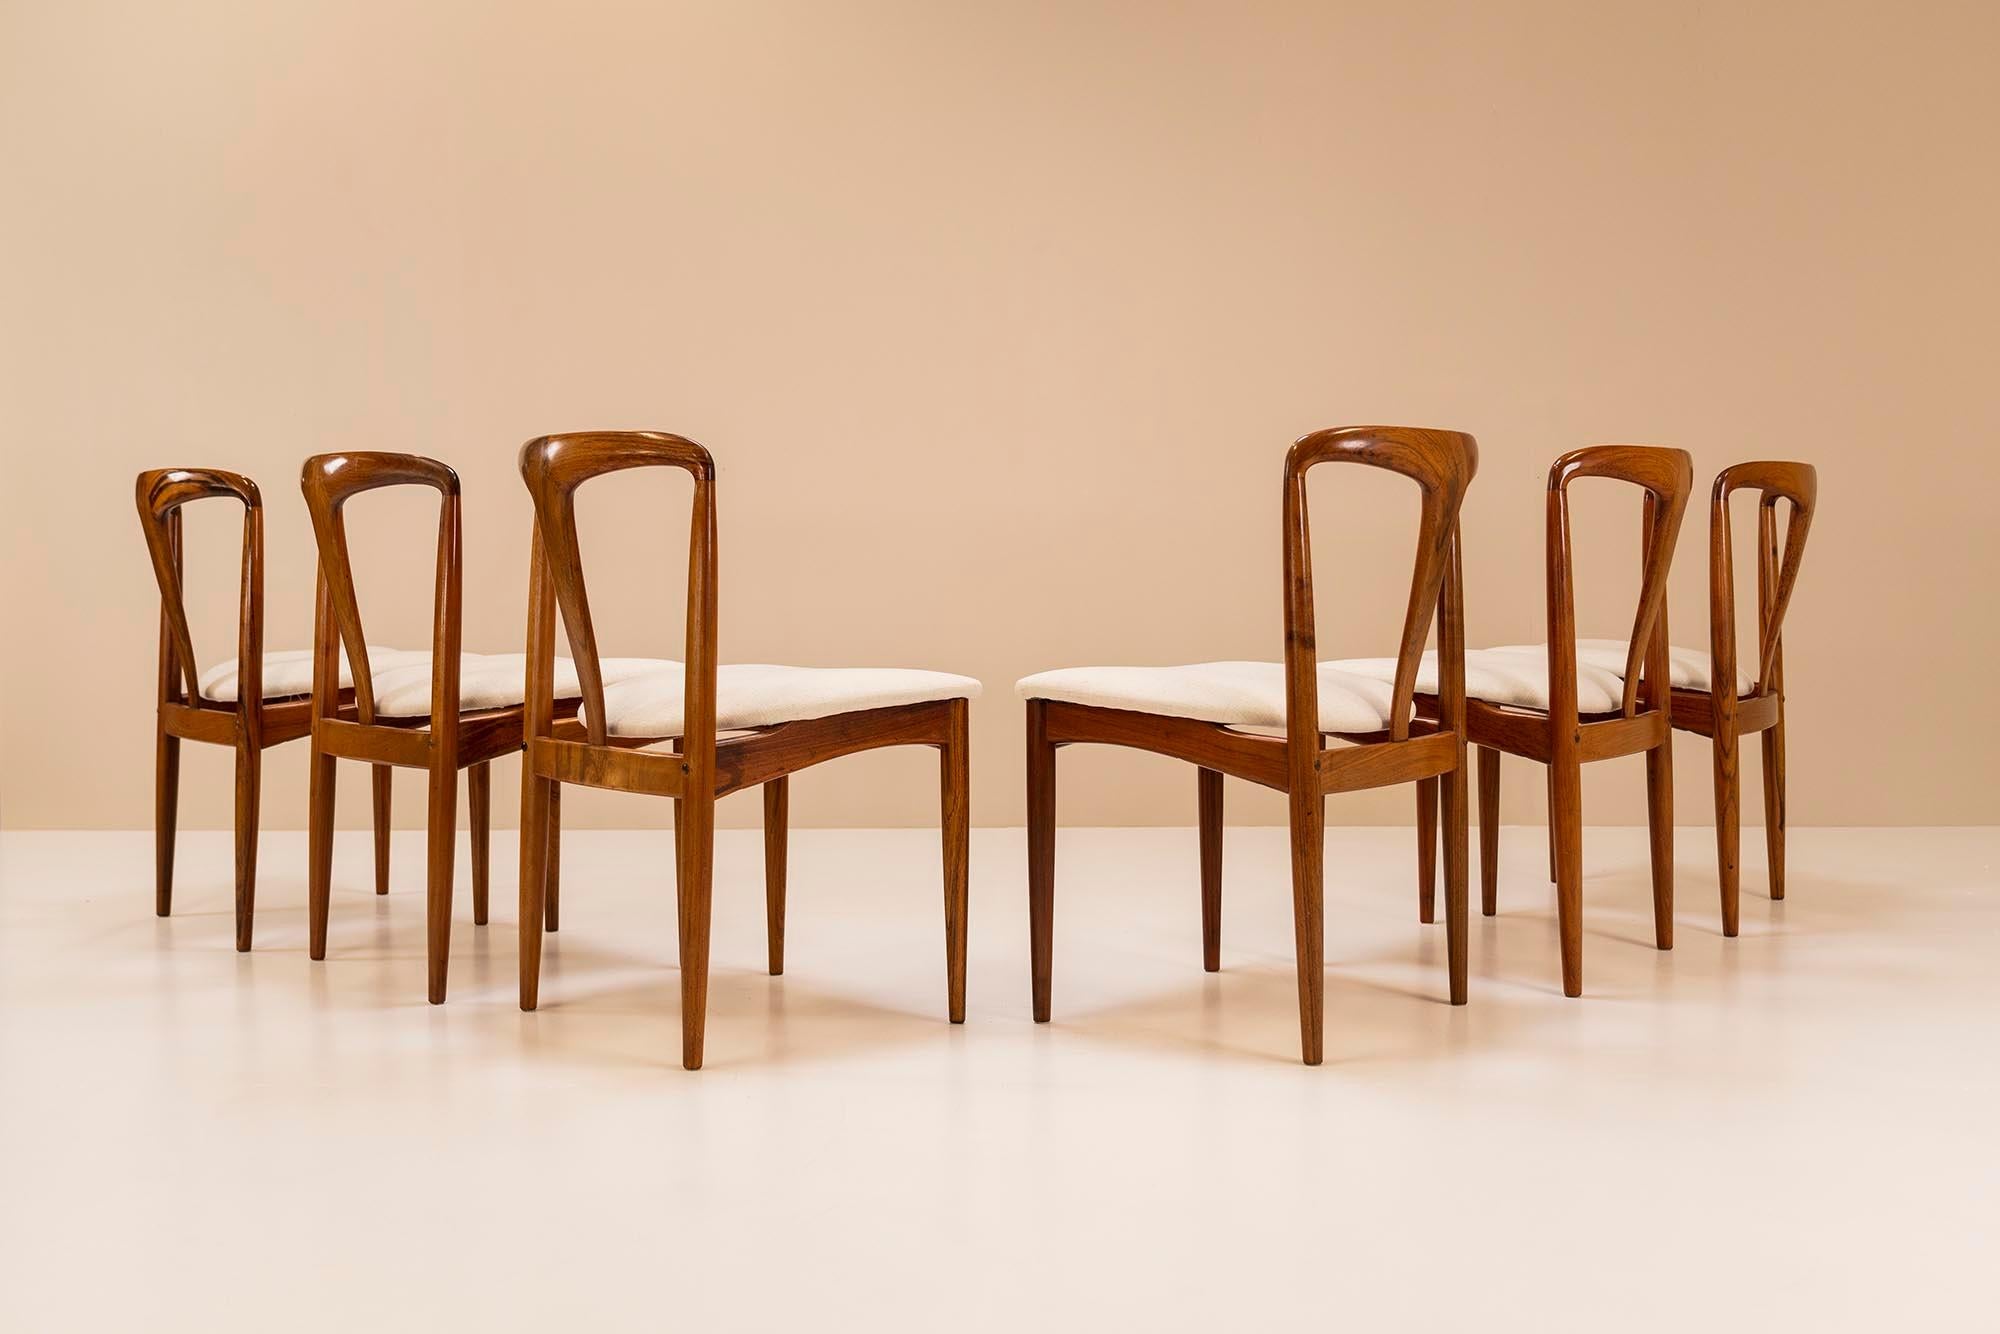 Un ensemble très raffiné de six chaises Juliane conçu par le designer danois Johannes Andersen en 1965 pour Uldum Mobelfabrik. Derrière ce design se cache un artisanat et une sensualité qui se révèlent au premier regard. Son dossier inclinable offre